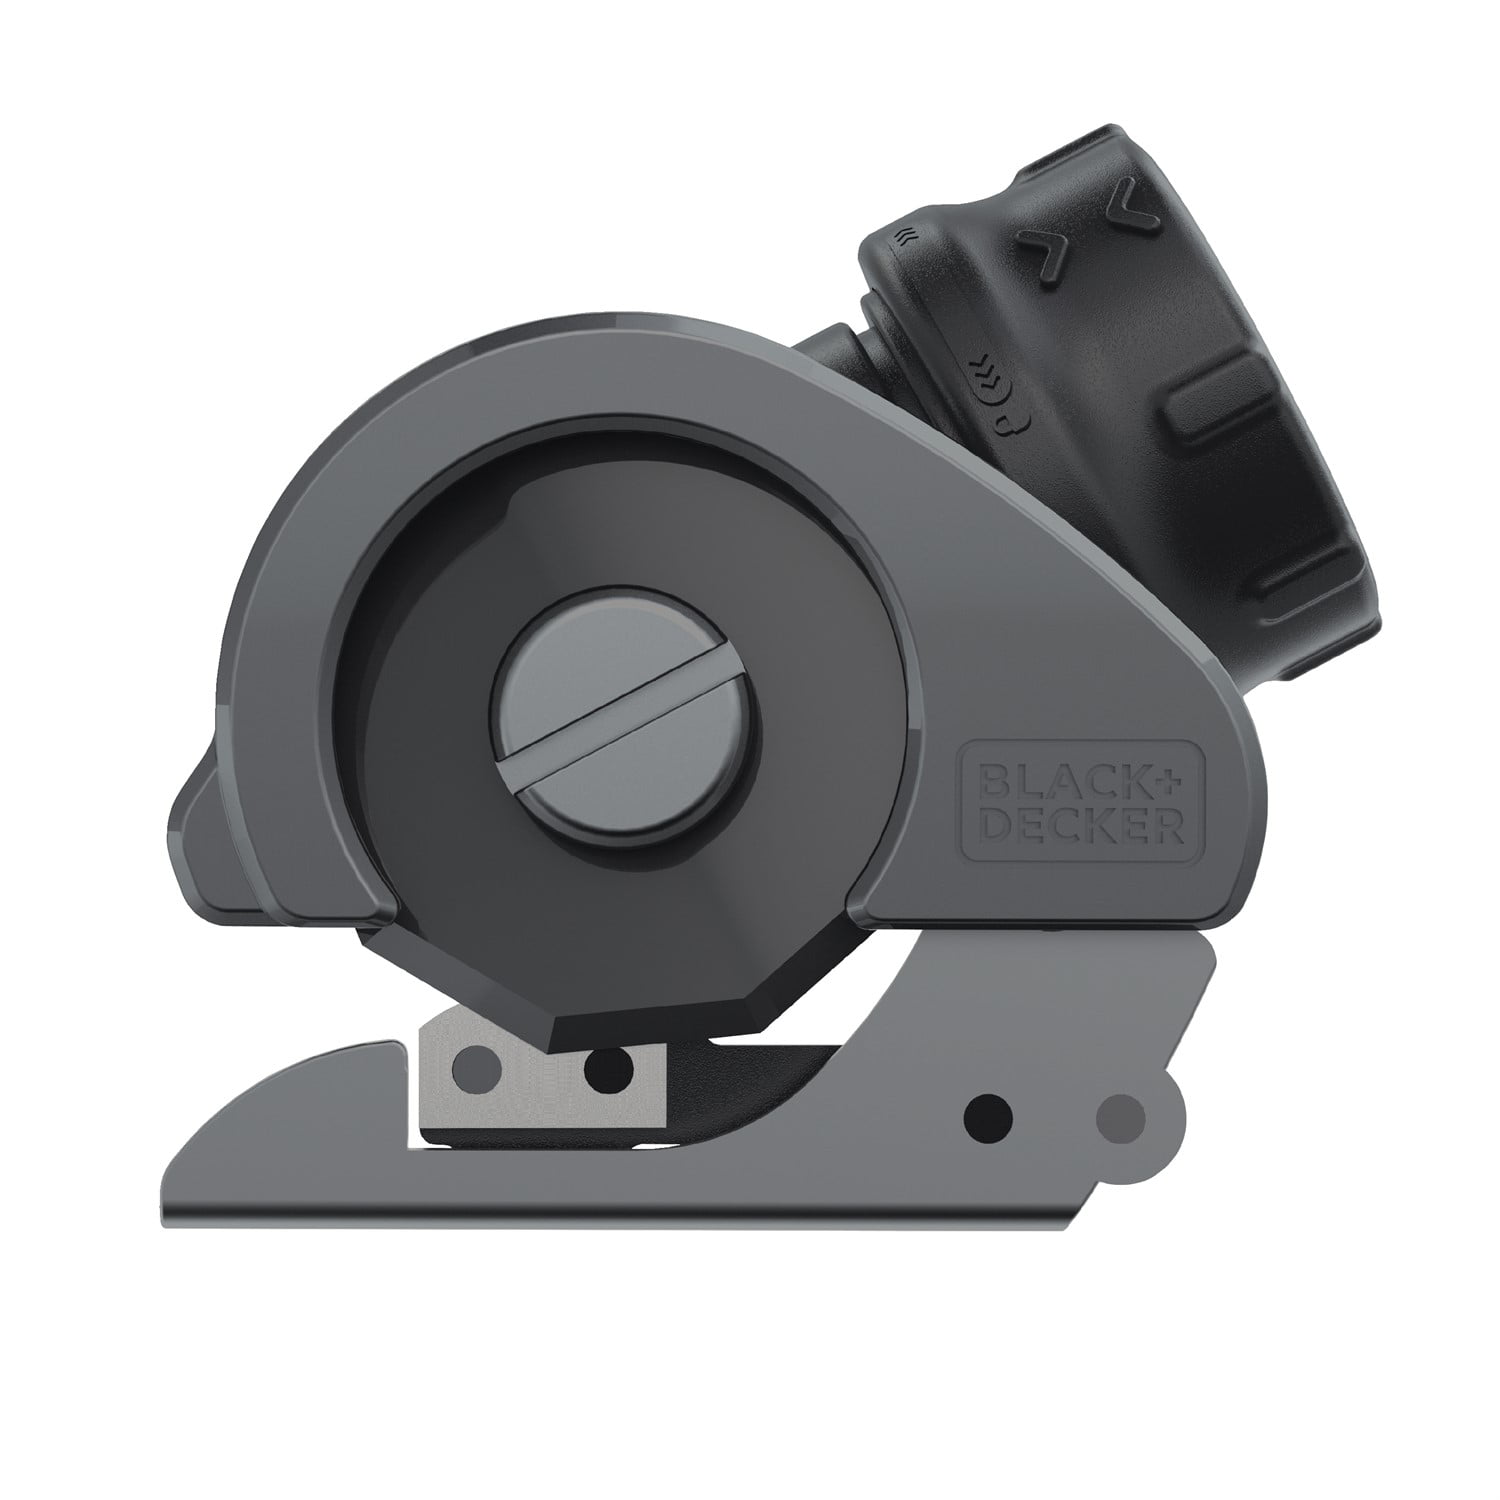  BLACK+DECKER 4V MAX Cordless Screwdriver, Right Angle  Attachment (BDCSRAA) : Tools & Home Improvement